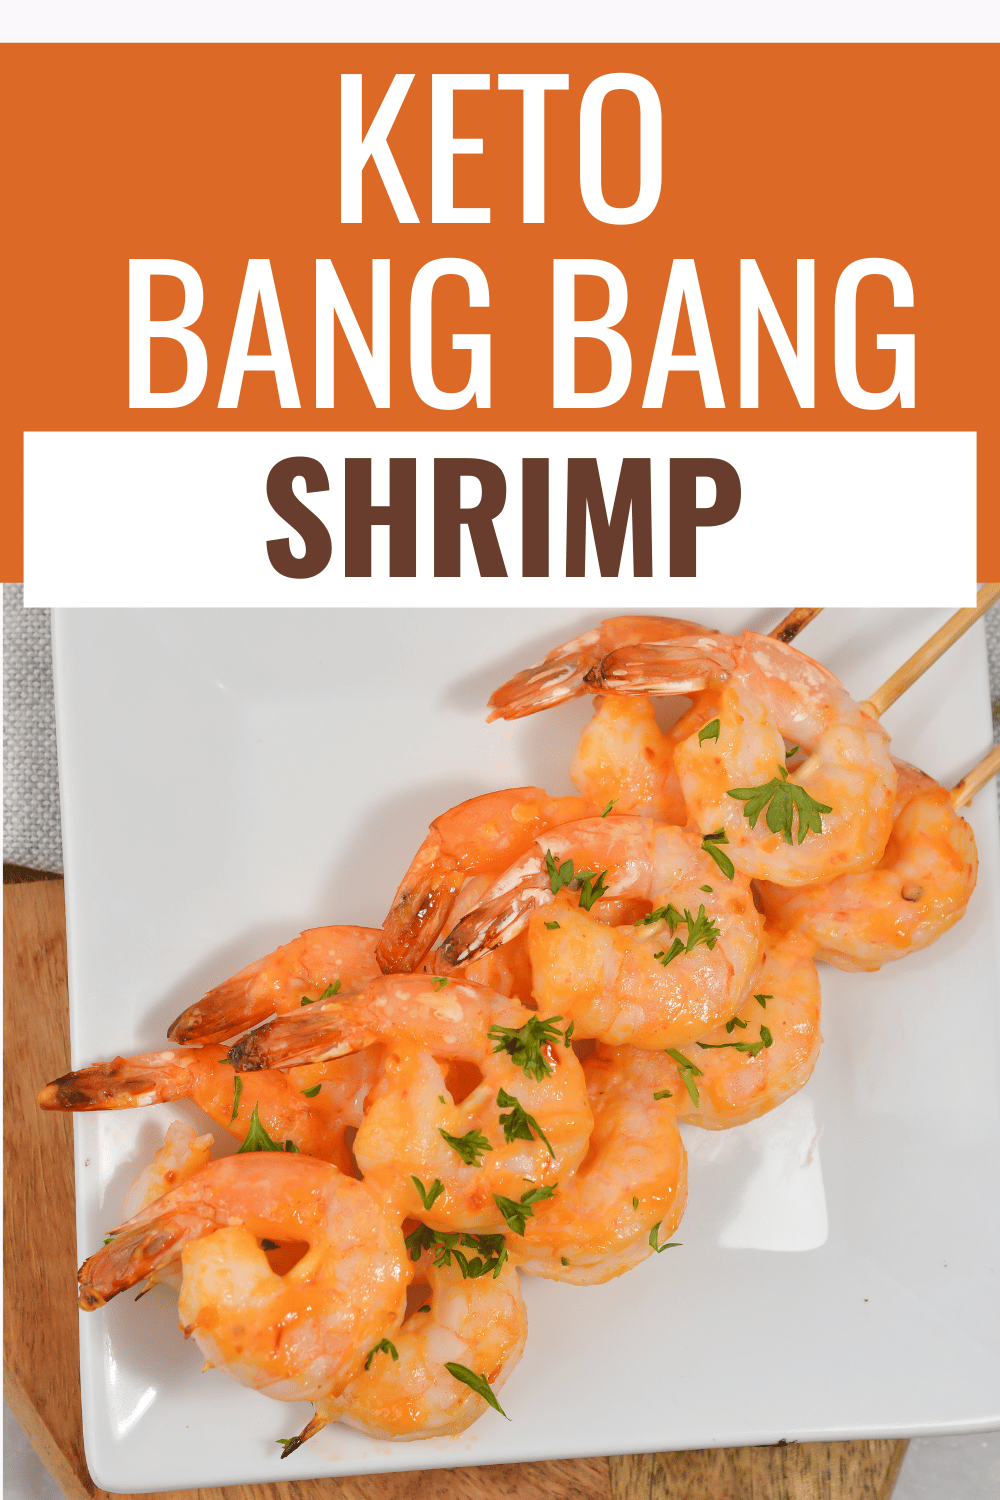 Keto bang bang shrimp on a plate, garnished with chopped parsley with title text reading Keto Bang Bang Shrimp